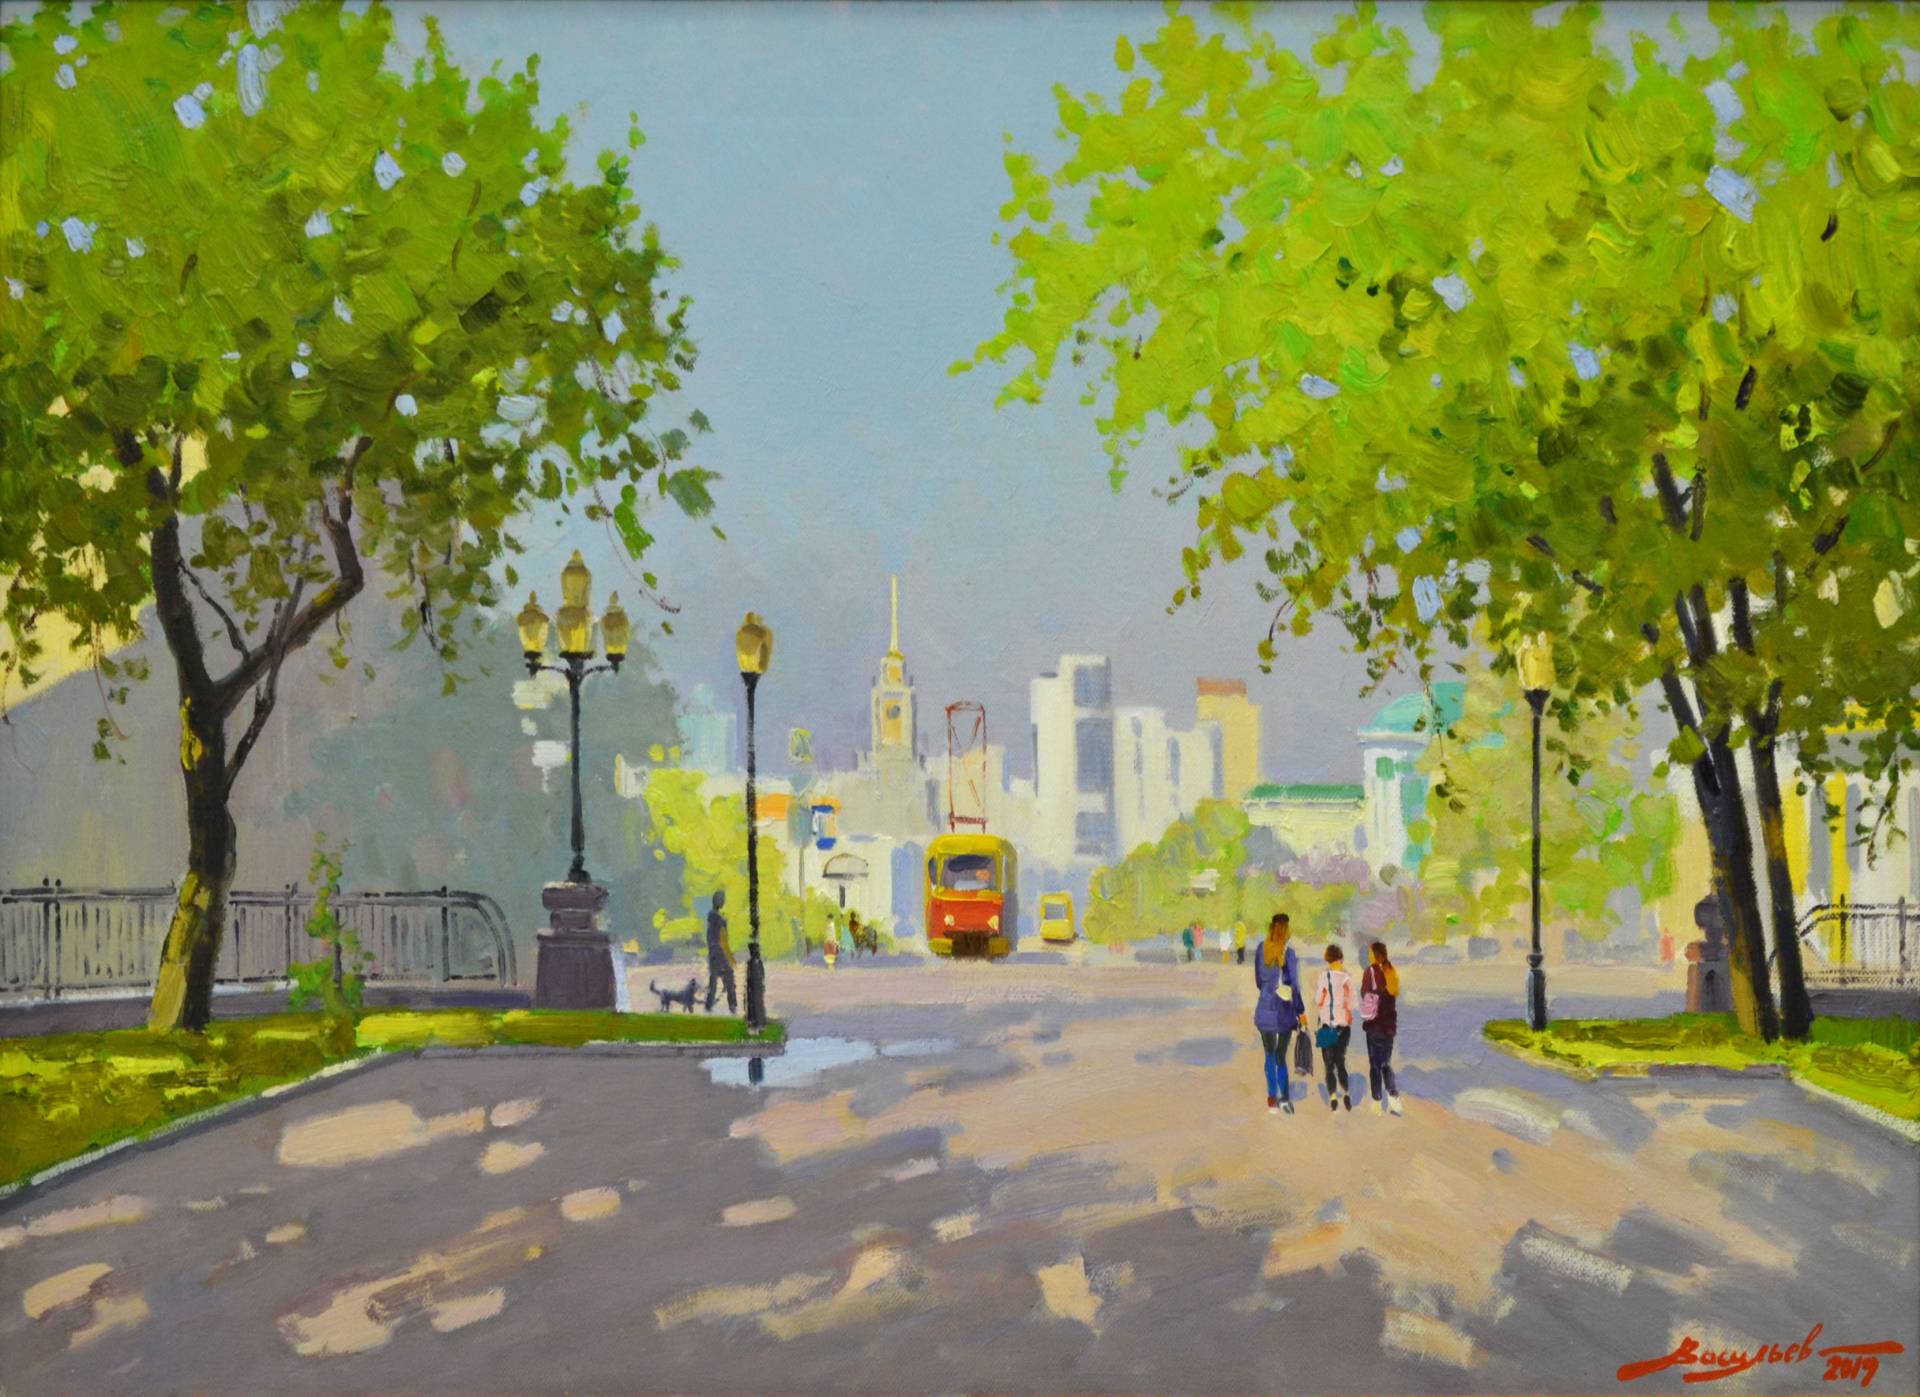 Morning tram - 1, Dmitry Vasiliev, Buy the painting Oil